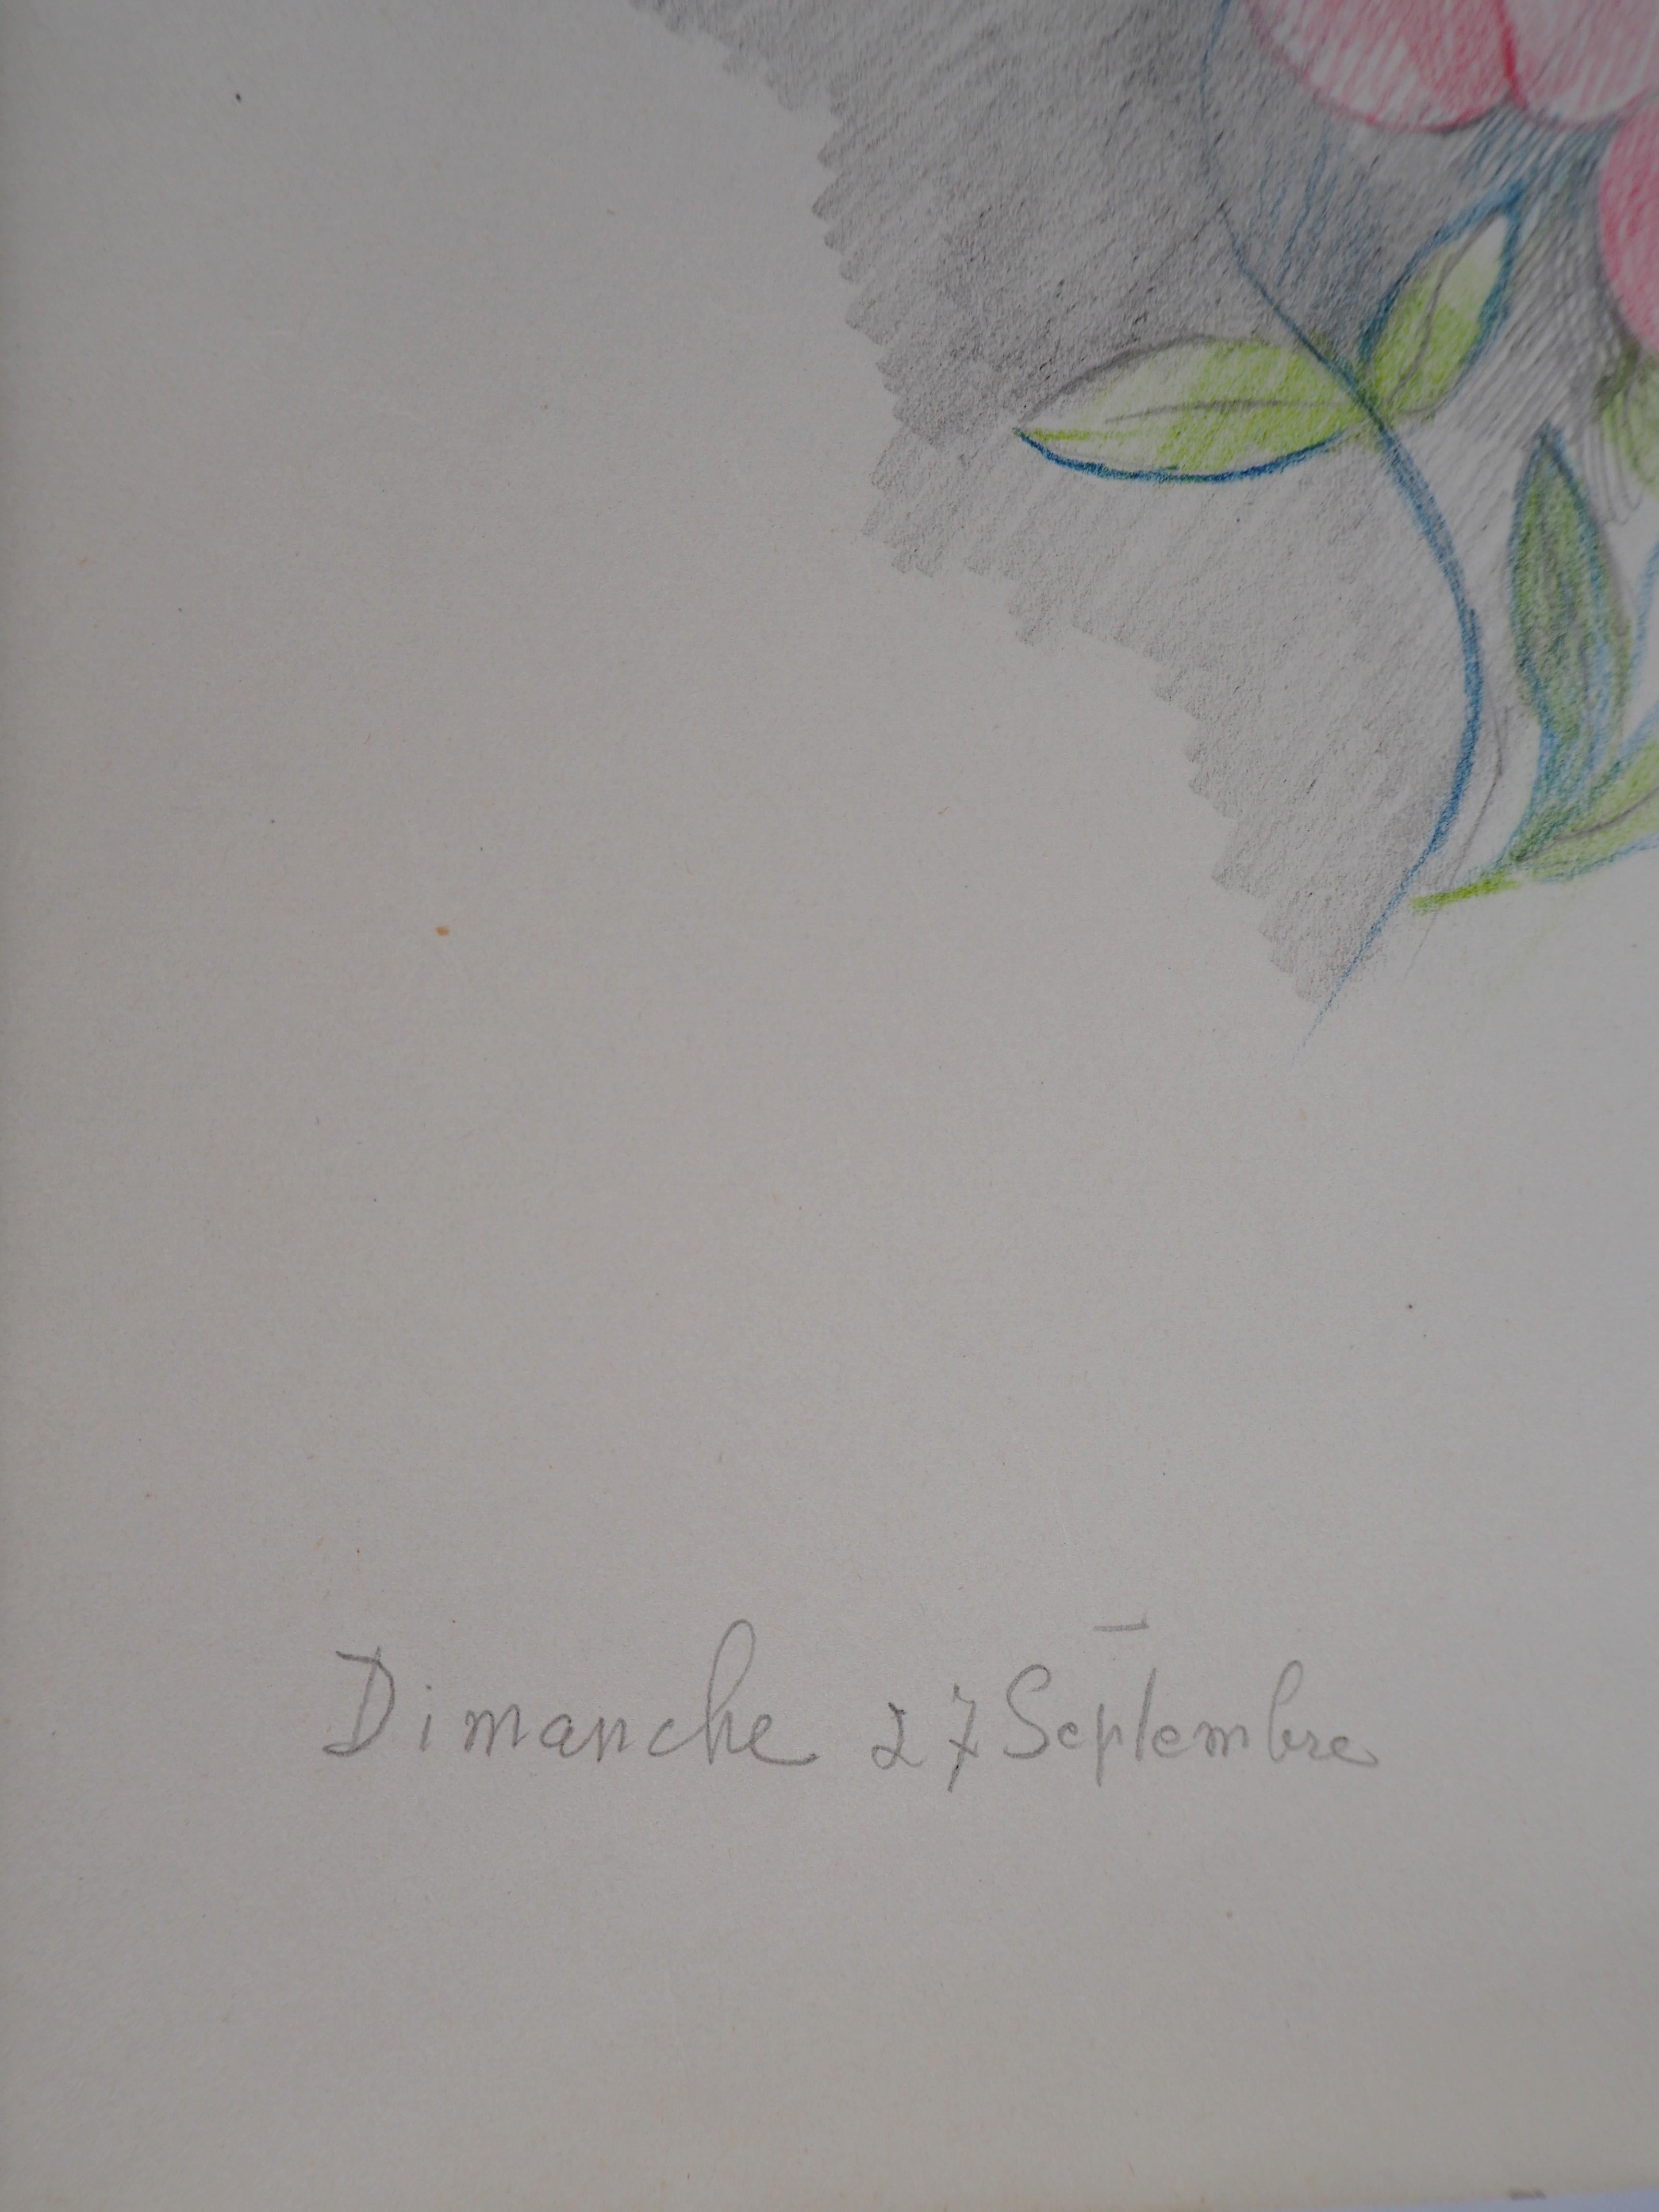 Marie LAURENCIN
Fleurs colorées, 1953

Dessin original au crayon 
Cachet de l'artiste signé
Sur papier 24,5 x 19,5 cm (environ 9,6 x 7,6 pouces)

Très bon état, marques de la manipulation sur le papier